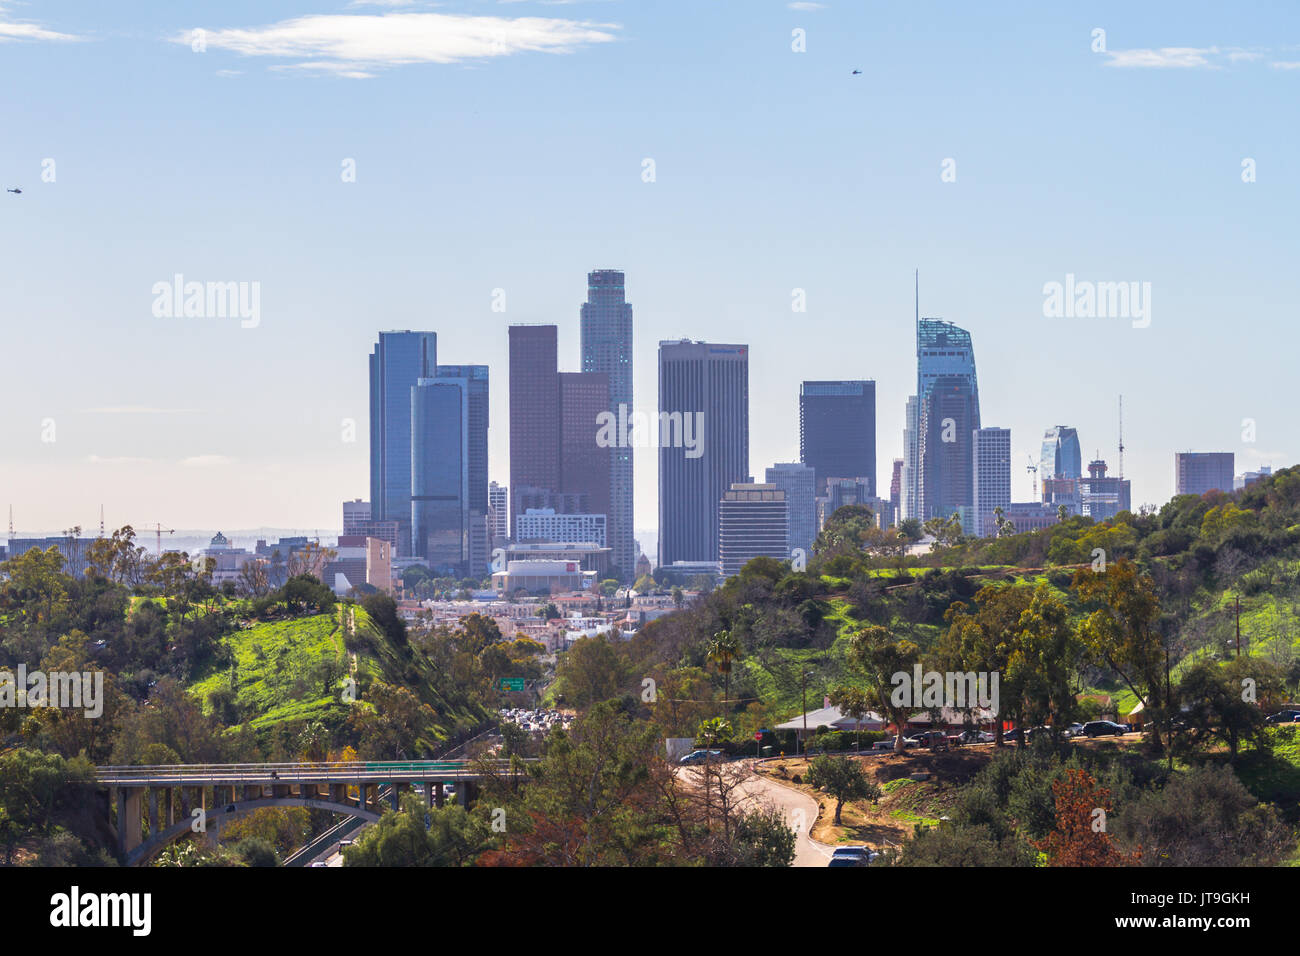 Die Skyline von Downtown Los Angeles, Kalifornien. Los Angeles ist die bevölkerungsreichste Stadt im US-Bundesstaat Kalifornien. Stockfoto